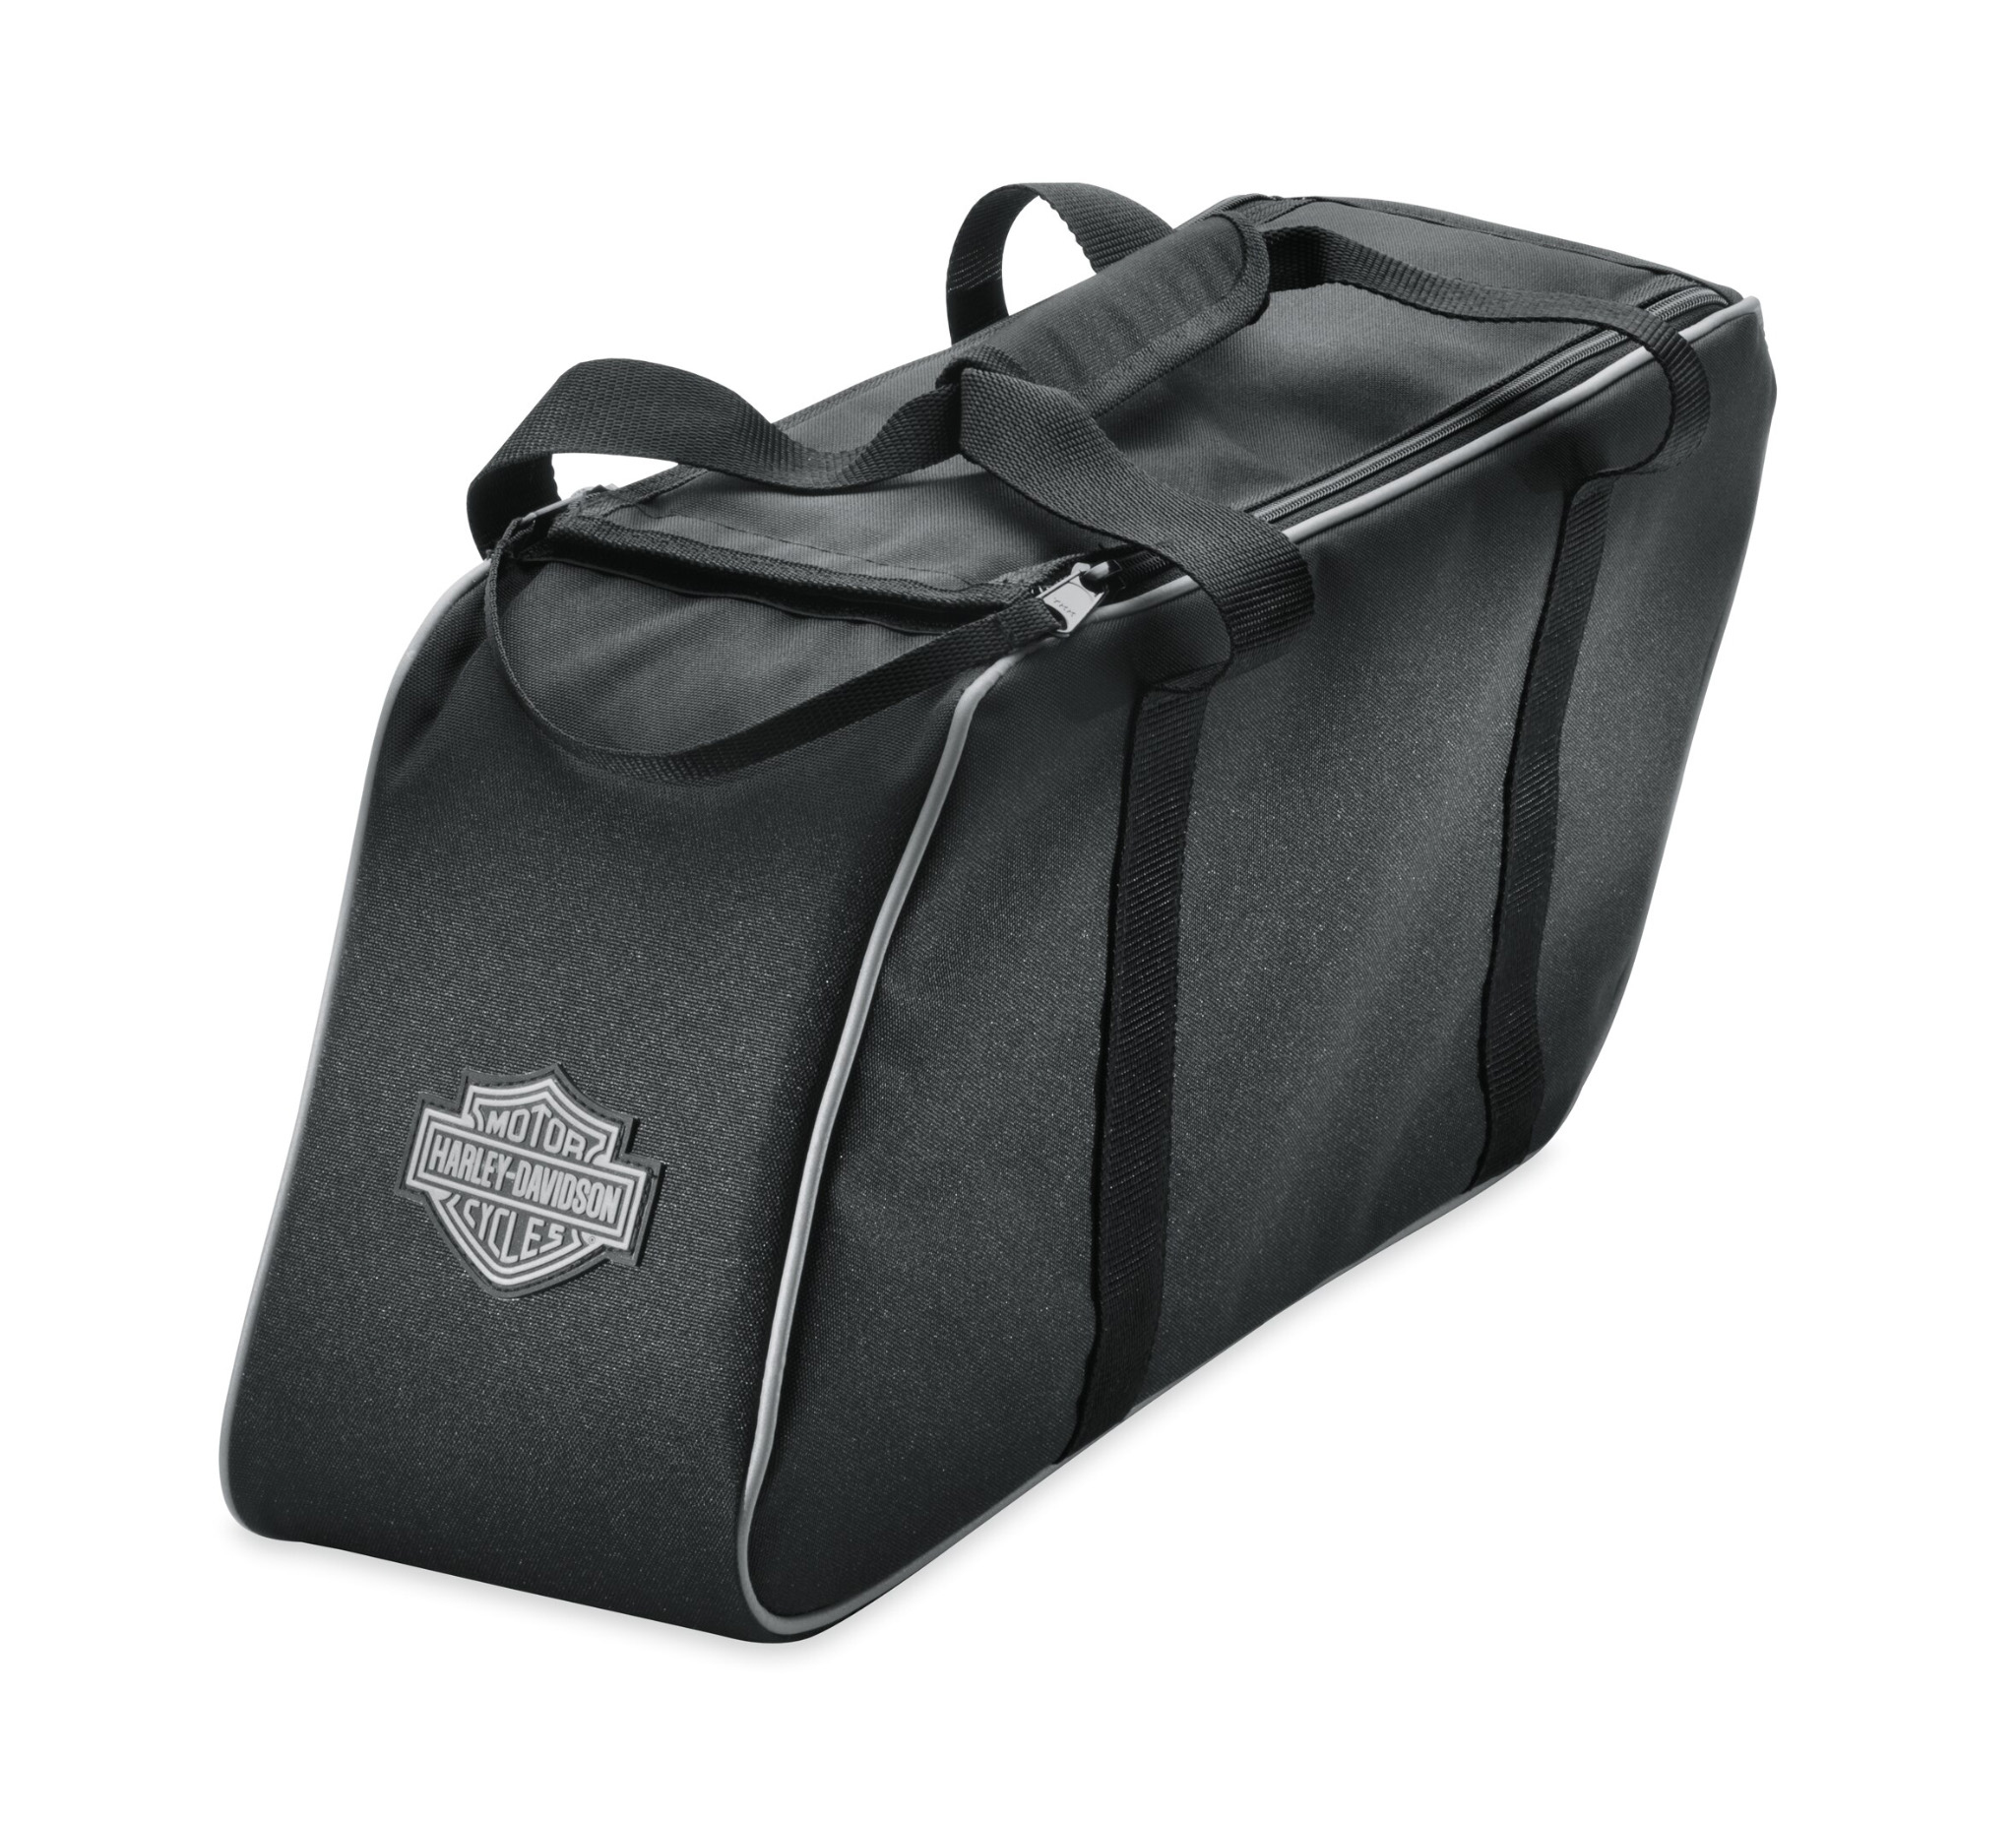 Harley Davidson Saddle Bag Liner Kit Travel Packs Softail FLSB 93300110 